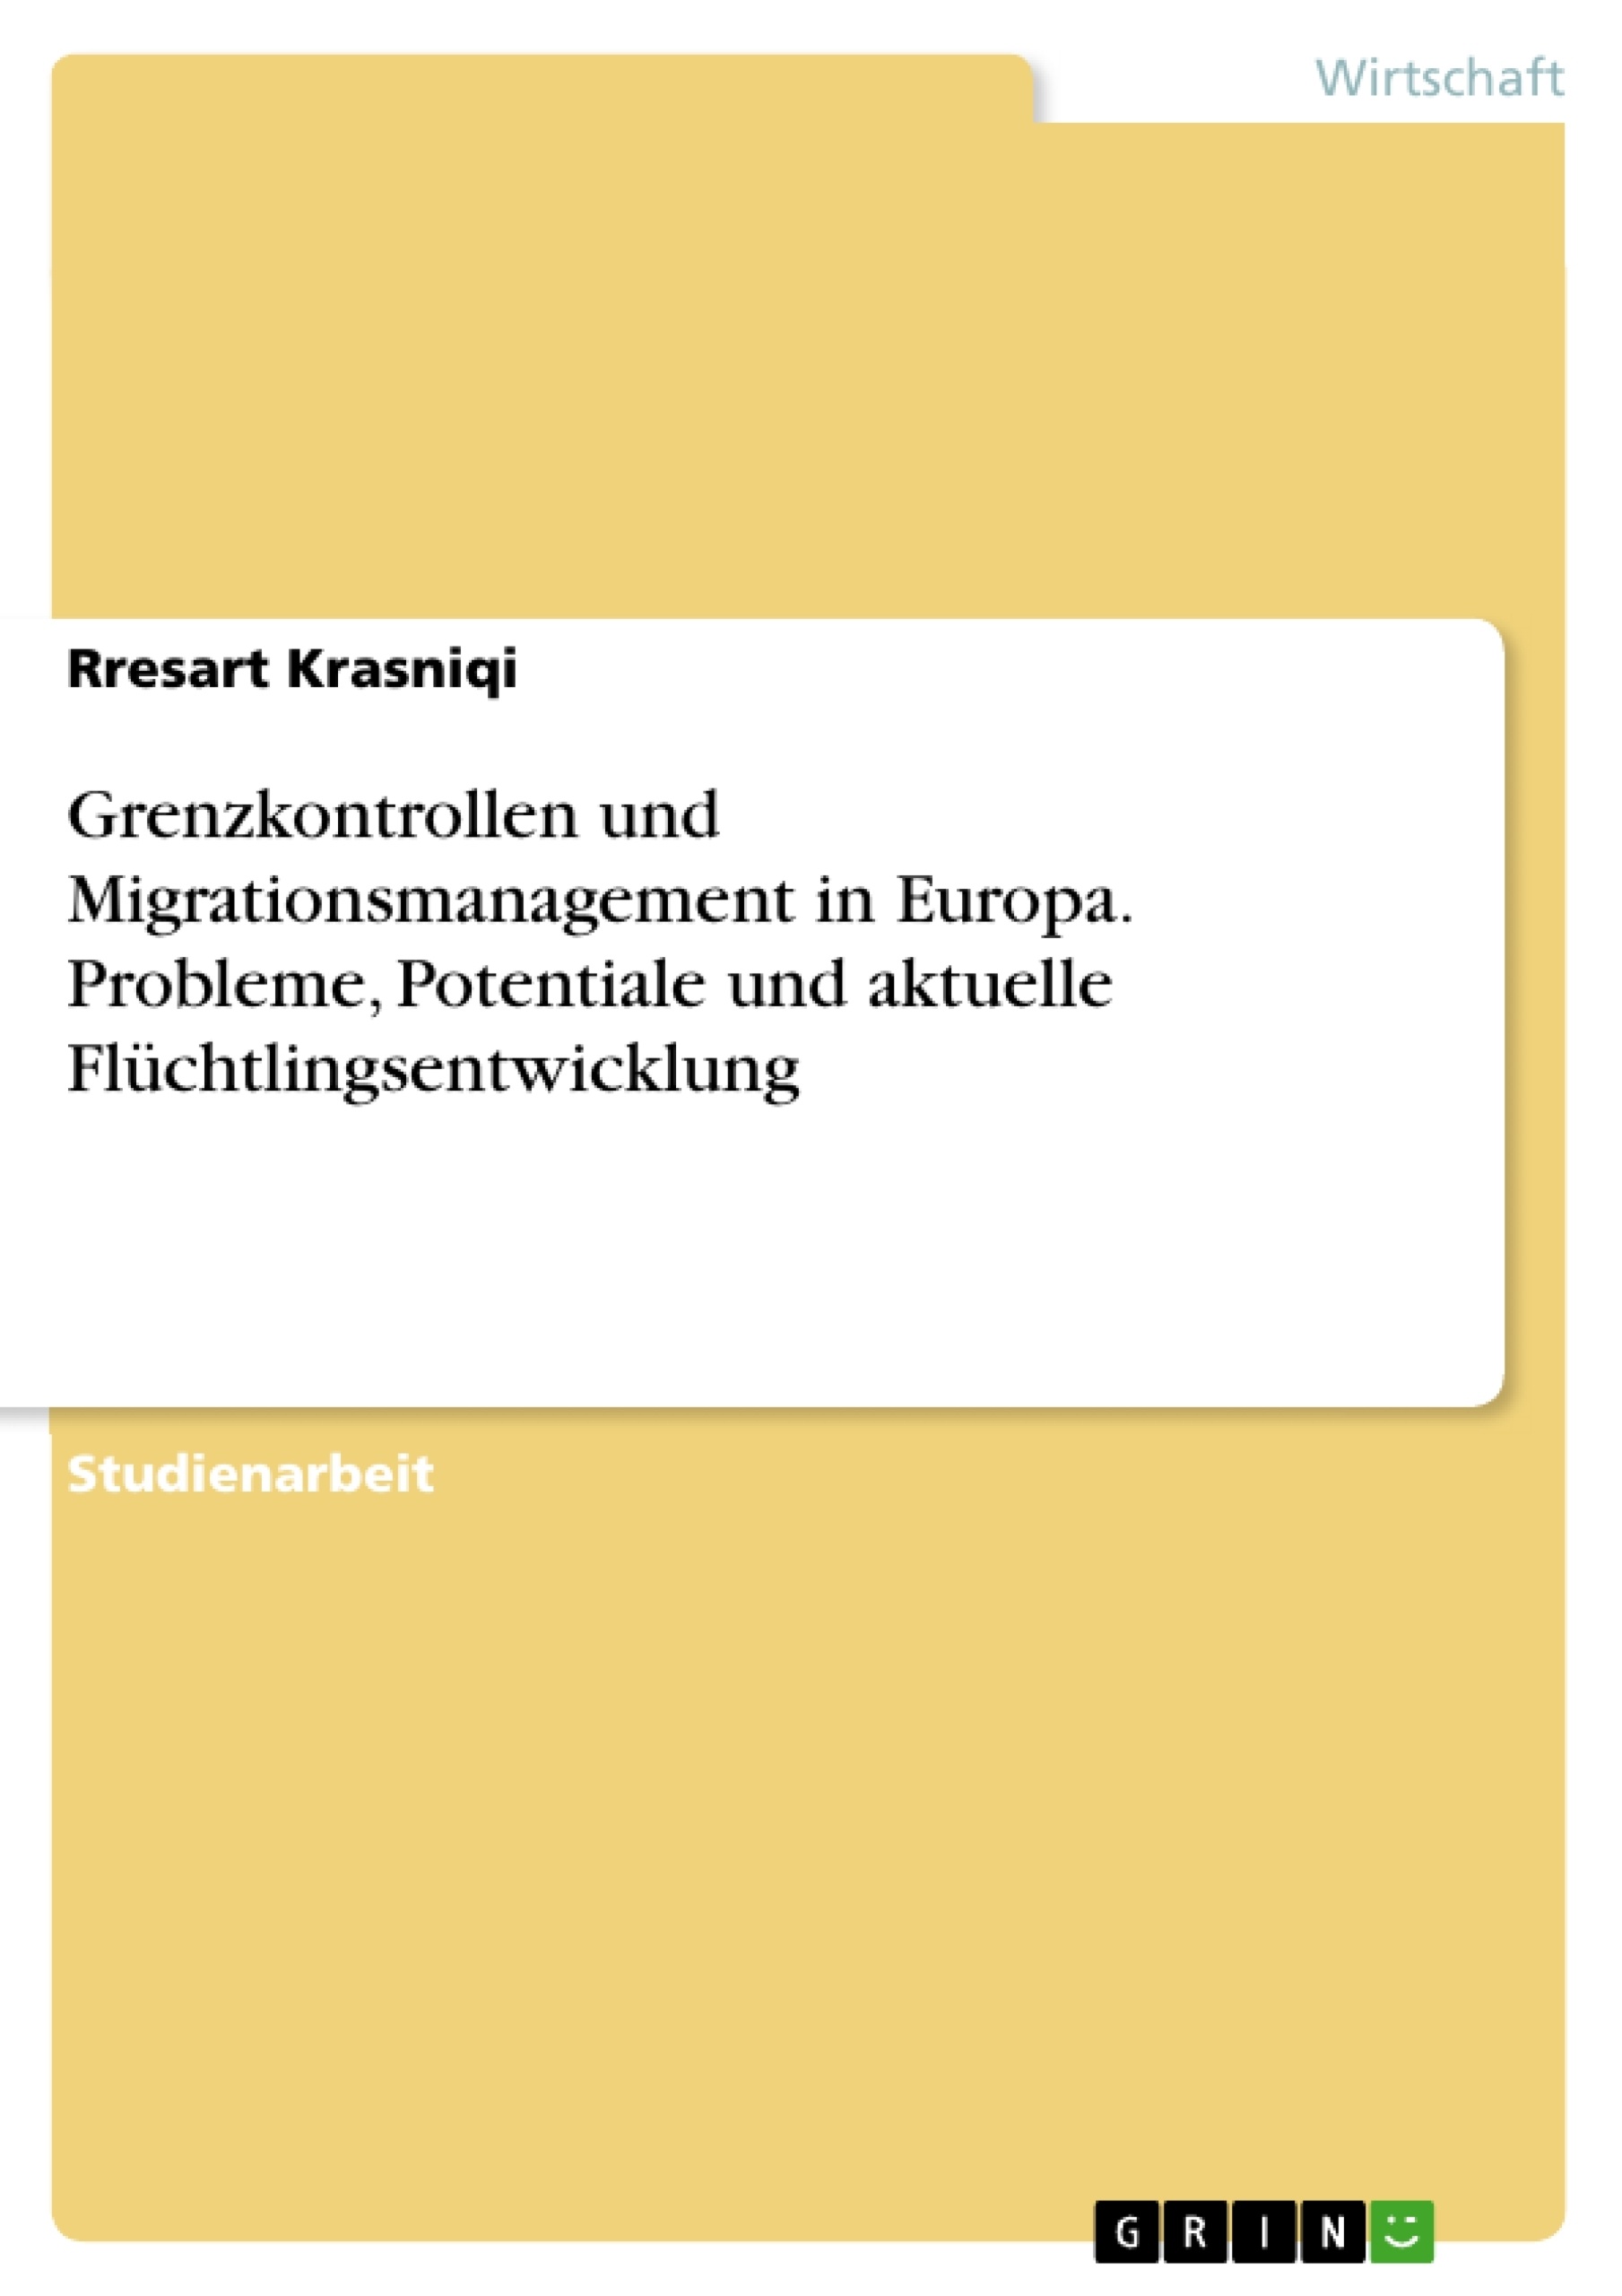 Title: Grenzkontrollen und Migrationsmanagement in Europa. Probleme, Potentiale und aktuelle Flüchtlingsentwicklung